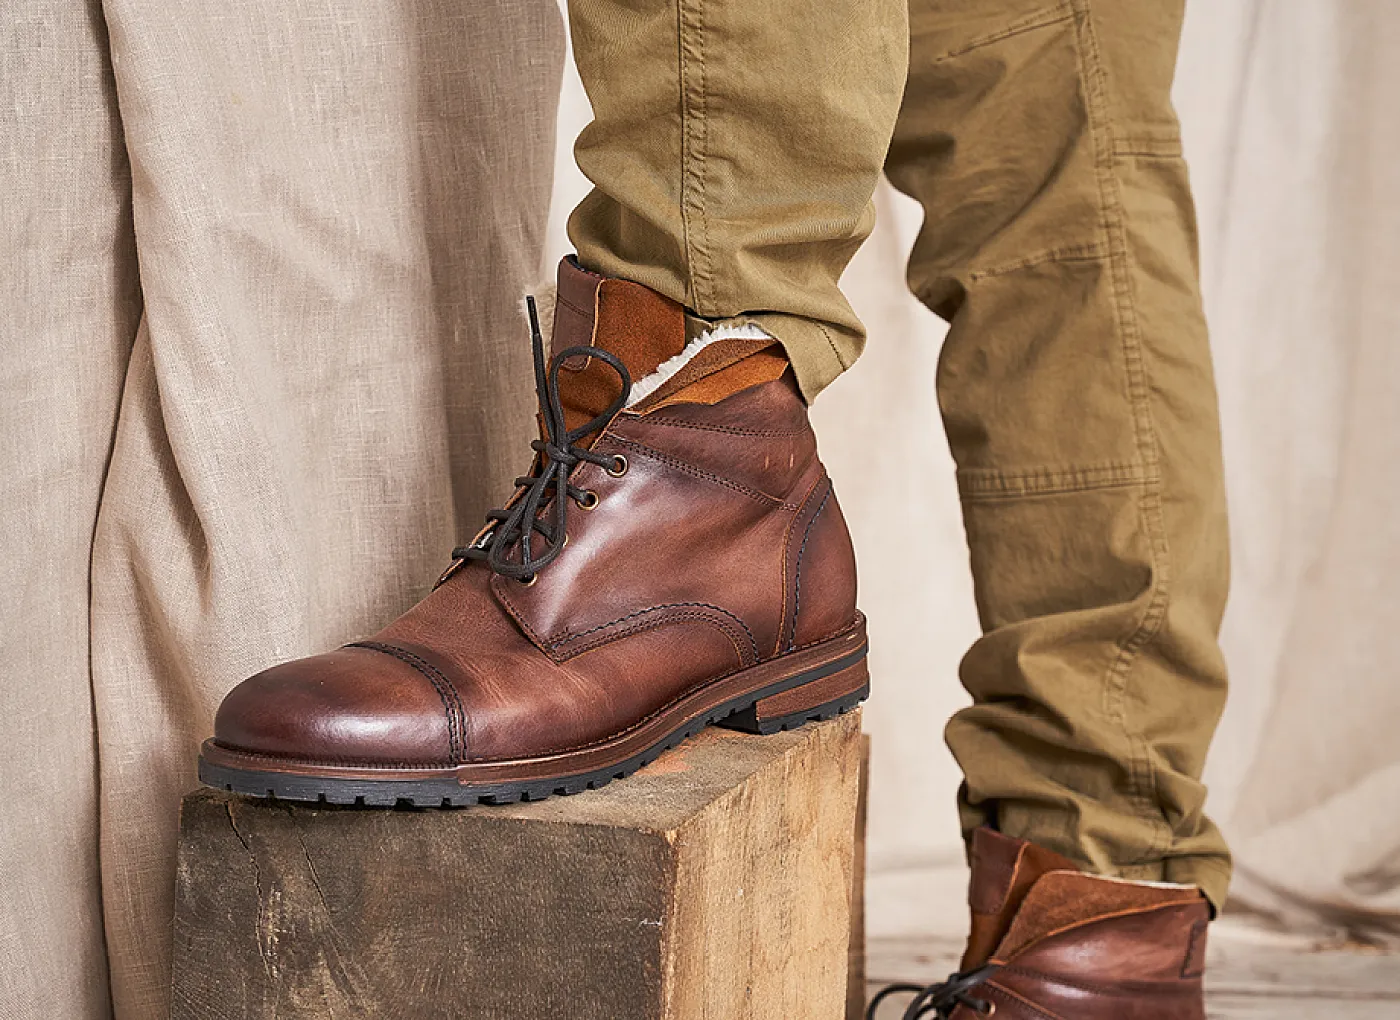 Découvrez nos modèles de boots et bottines pour hommes